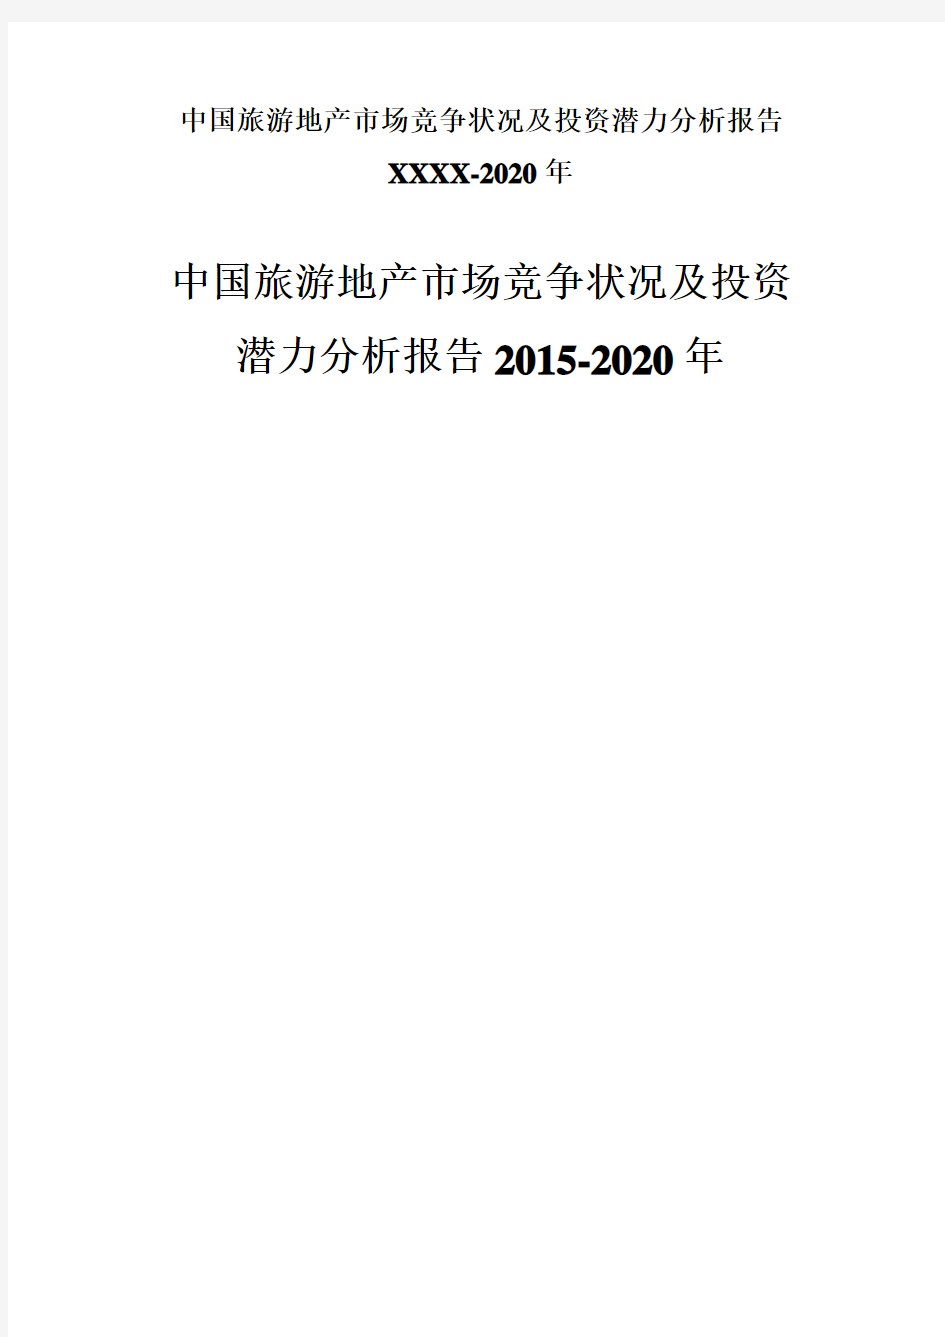 中国旅游地产市场竞争状况及投资潜力分析报告XXXX-2020年